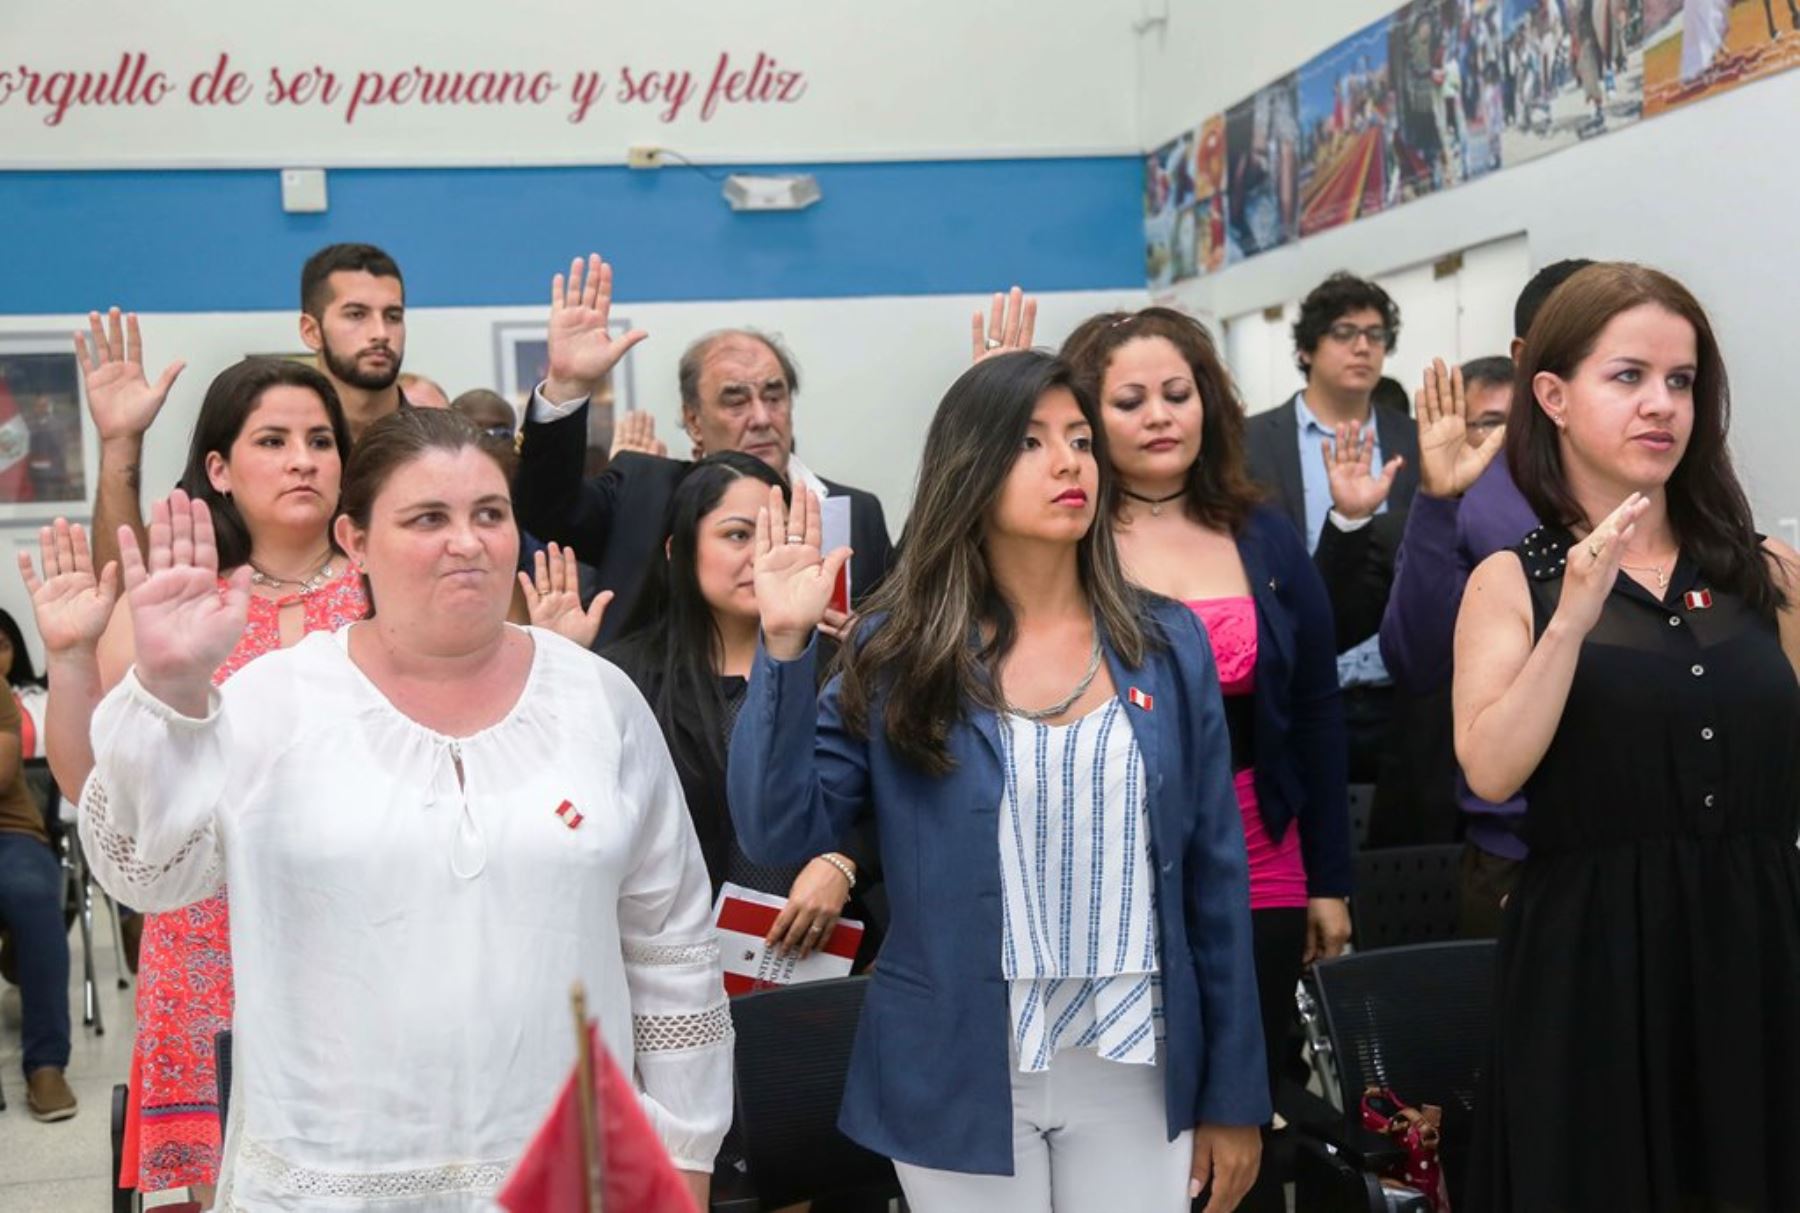 428 ciudadanos extranjeros se nacionalizaron peruanos el último año. Foto: ANDINA/Difusión.